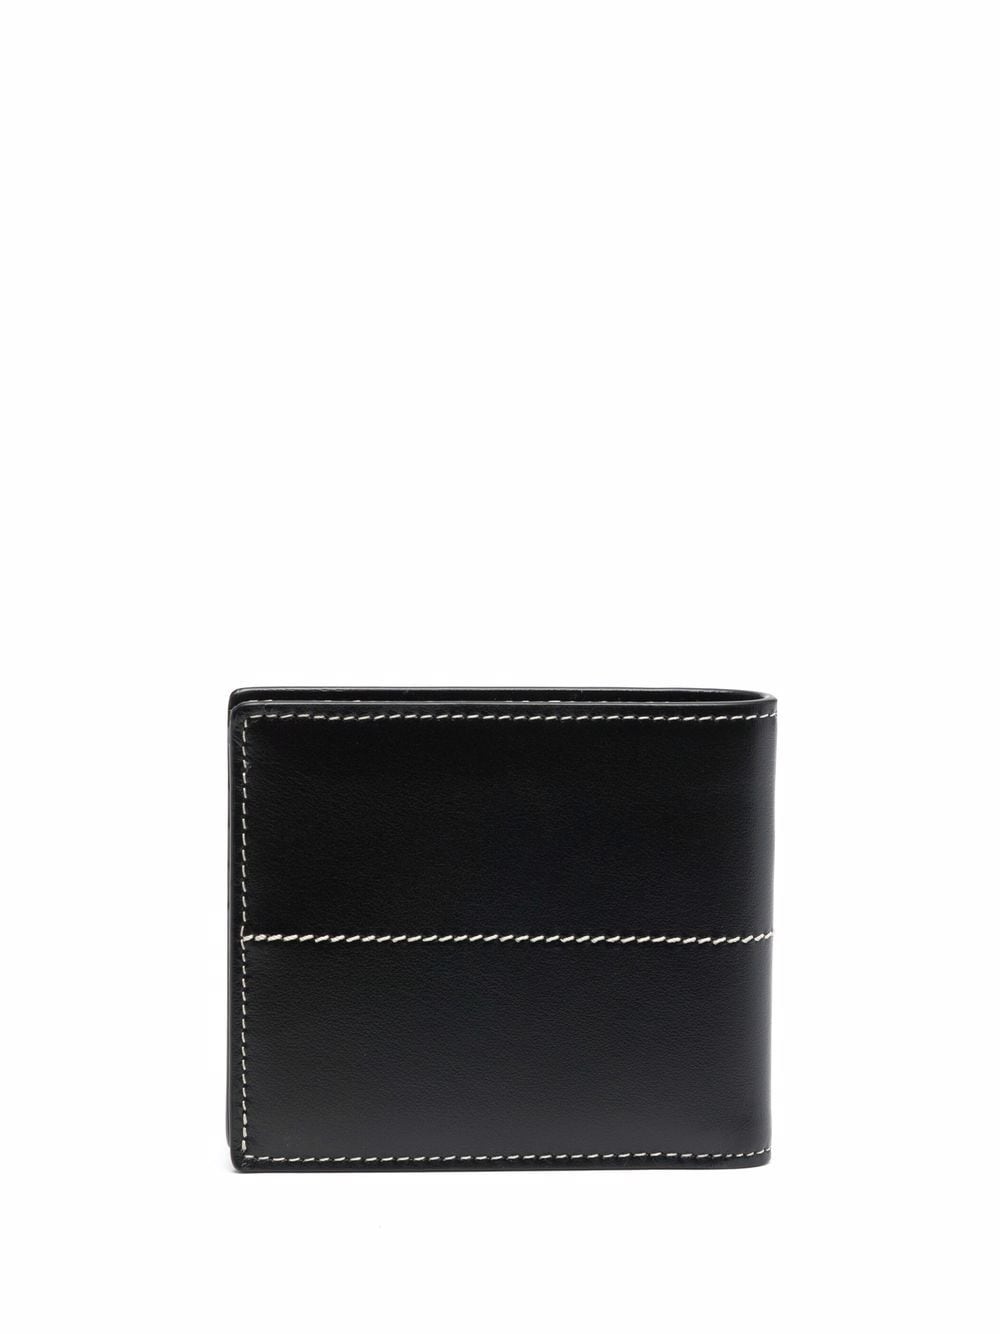 leather bi-fold wallet - 2